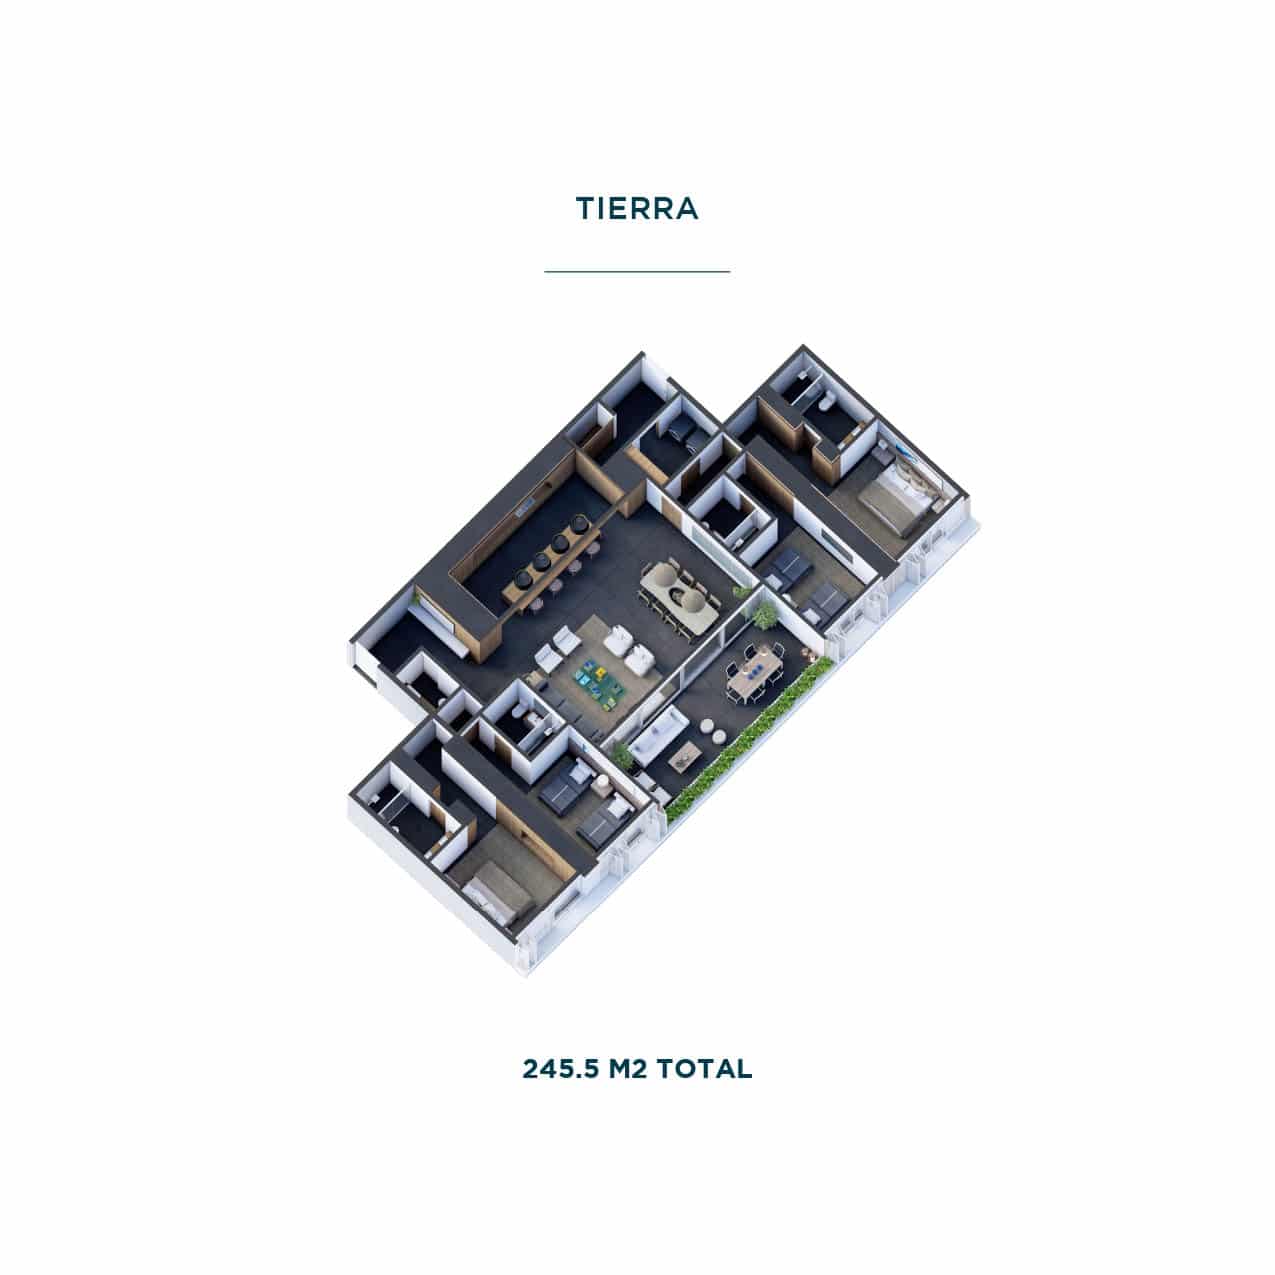 TIERRA Floor Plan